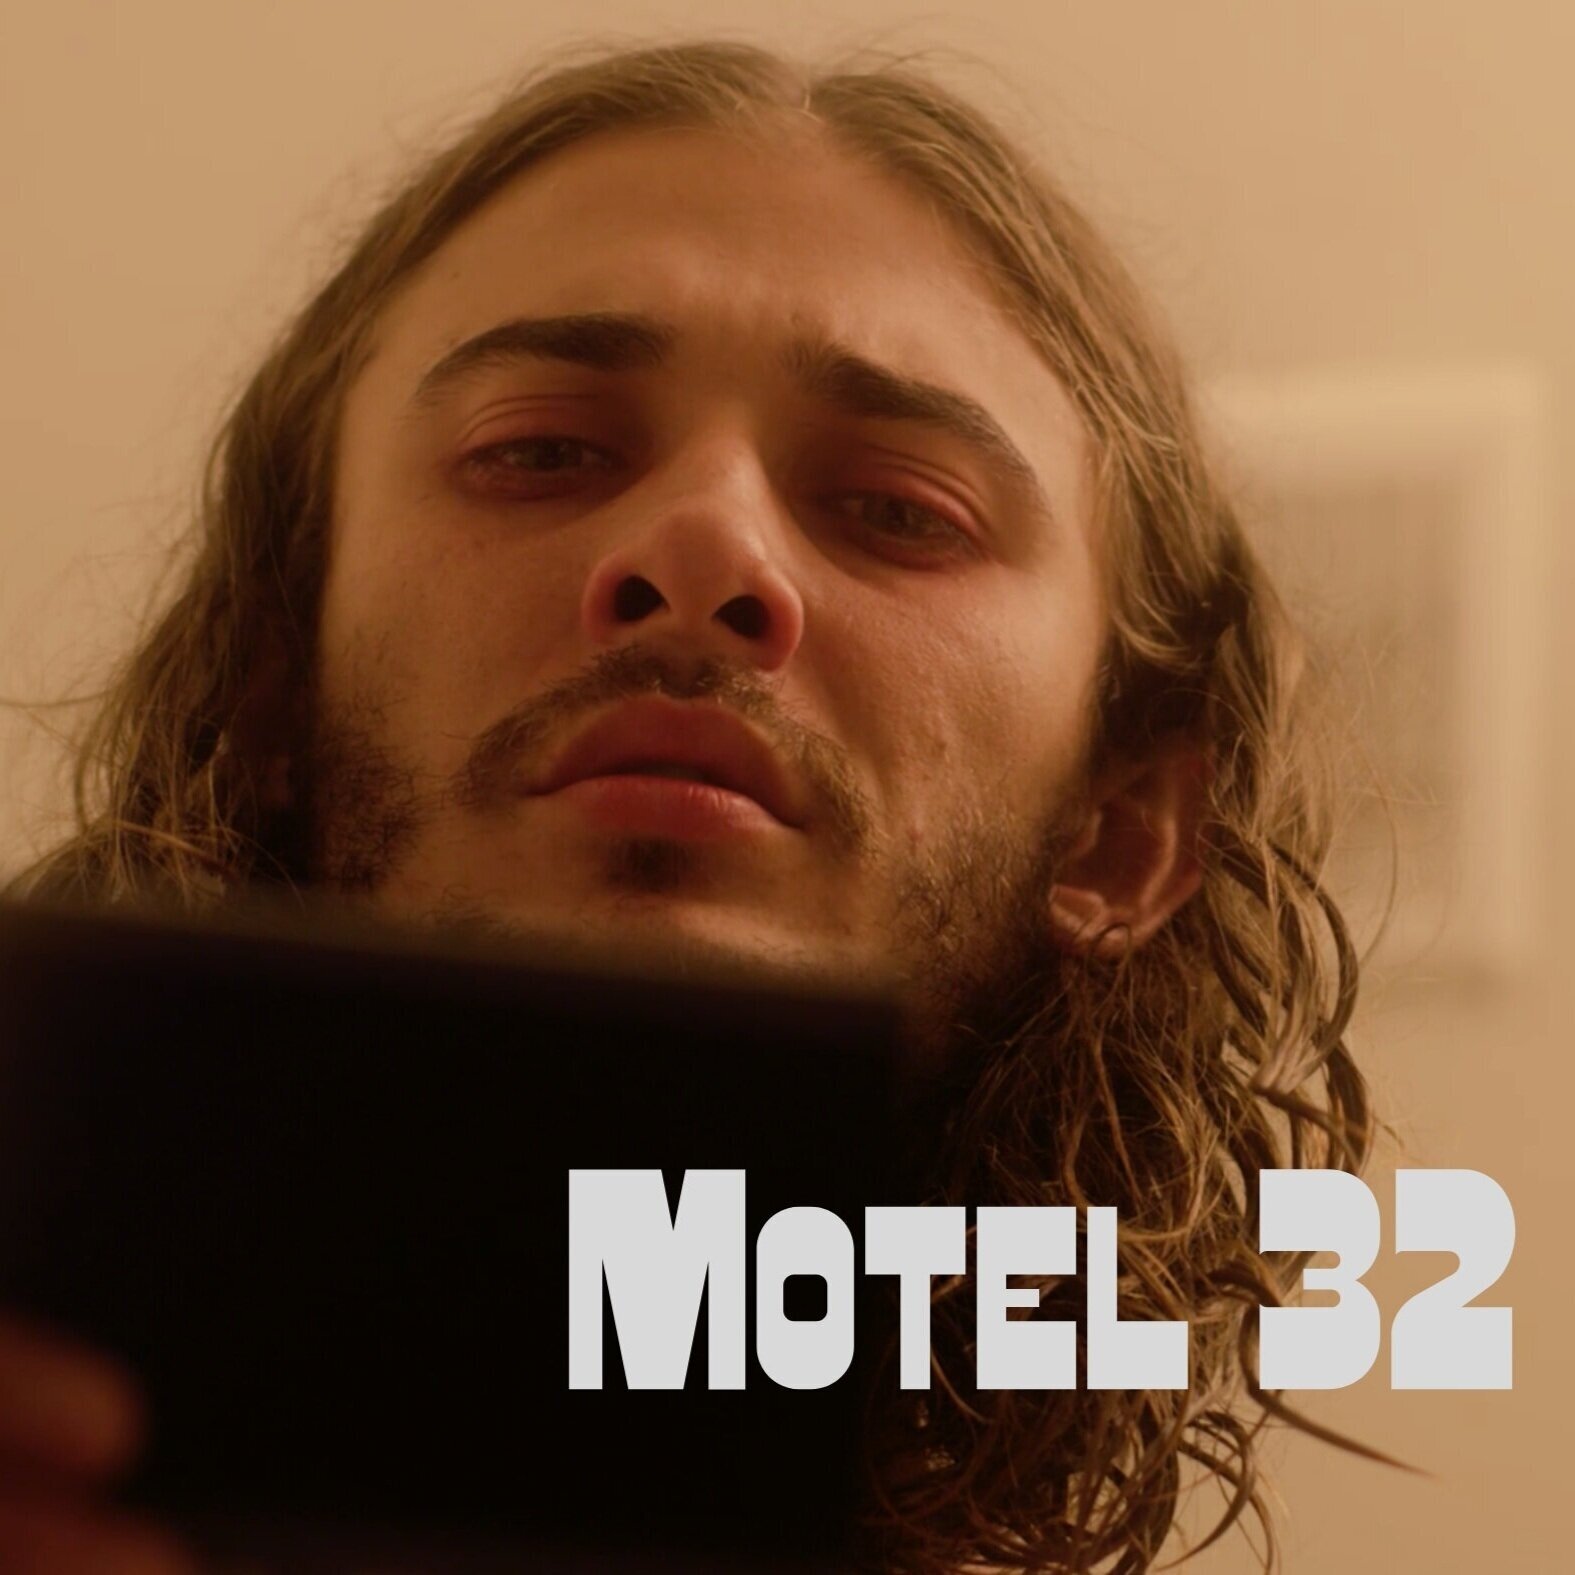 Motel 32 (2020) - Short Film / Writer,Producer,Director